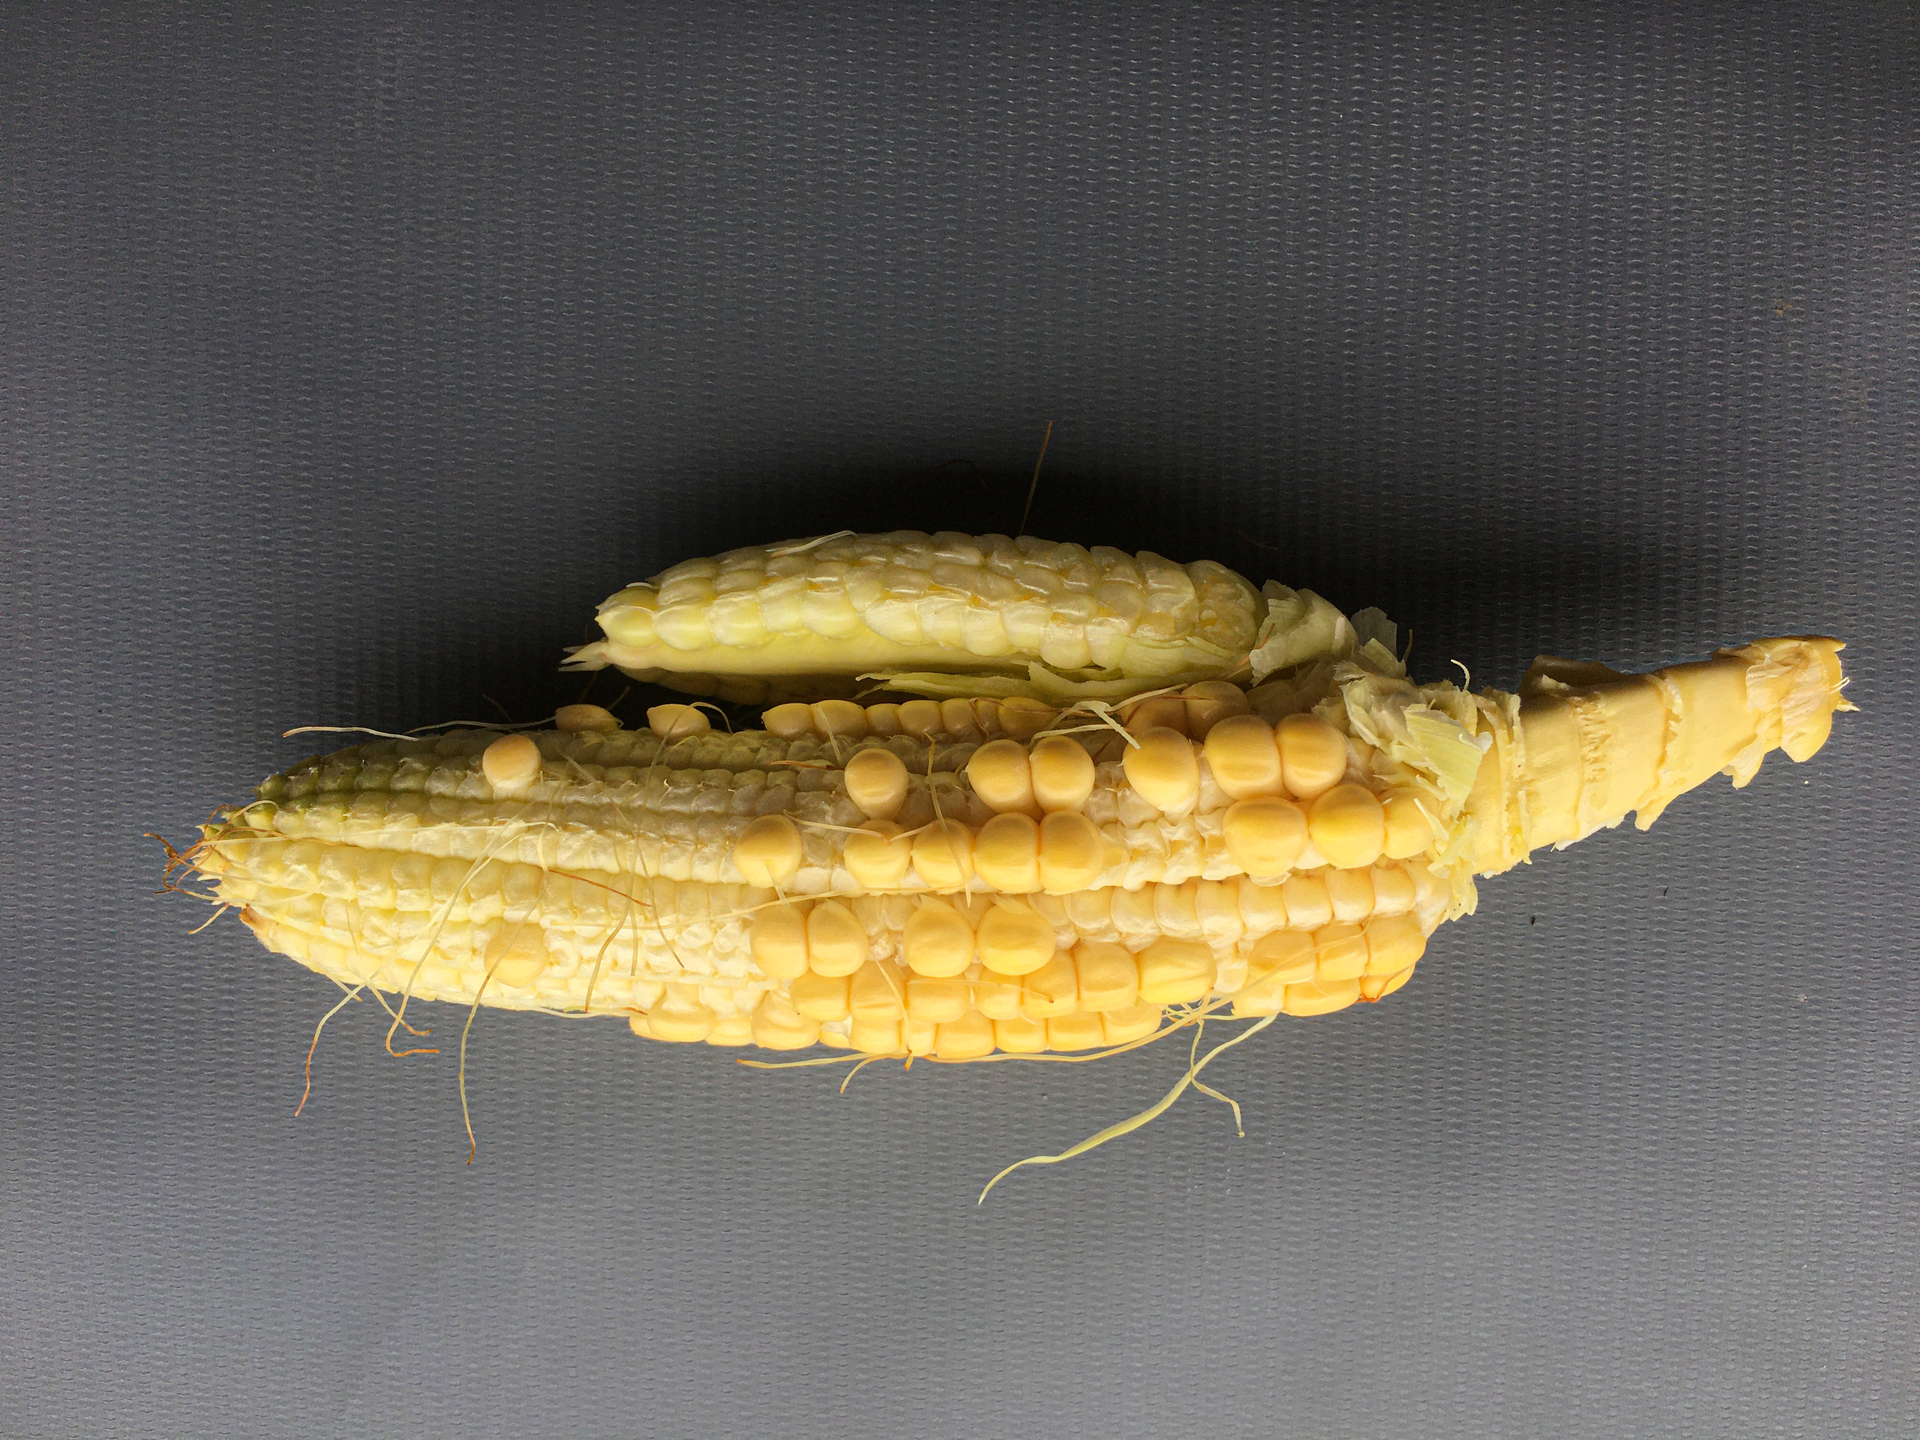 Fotografia mostra espiga de milho produzida por planta de milho contaminado com o complexo de enfezamento.